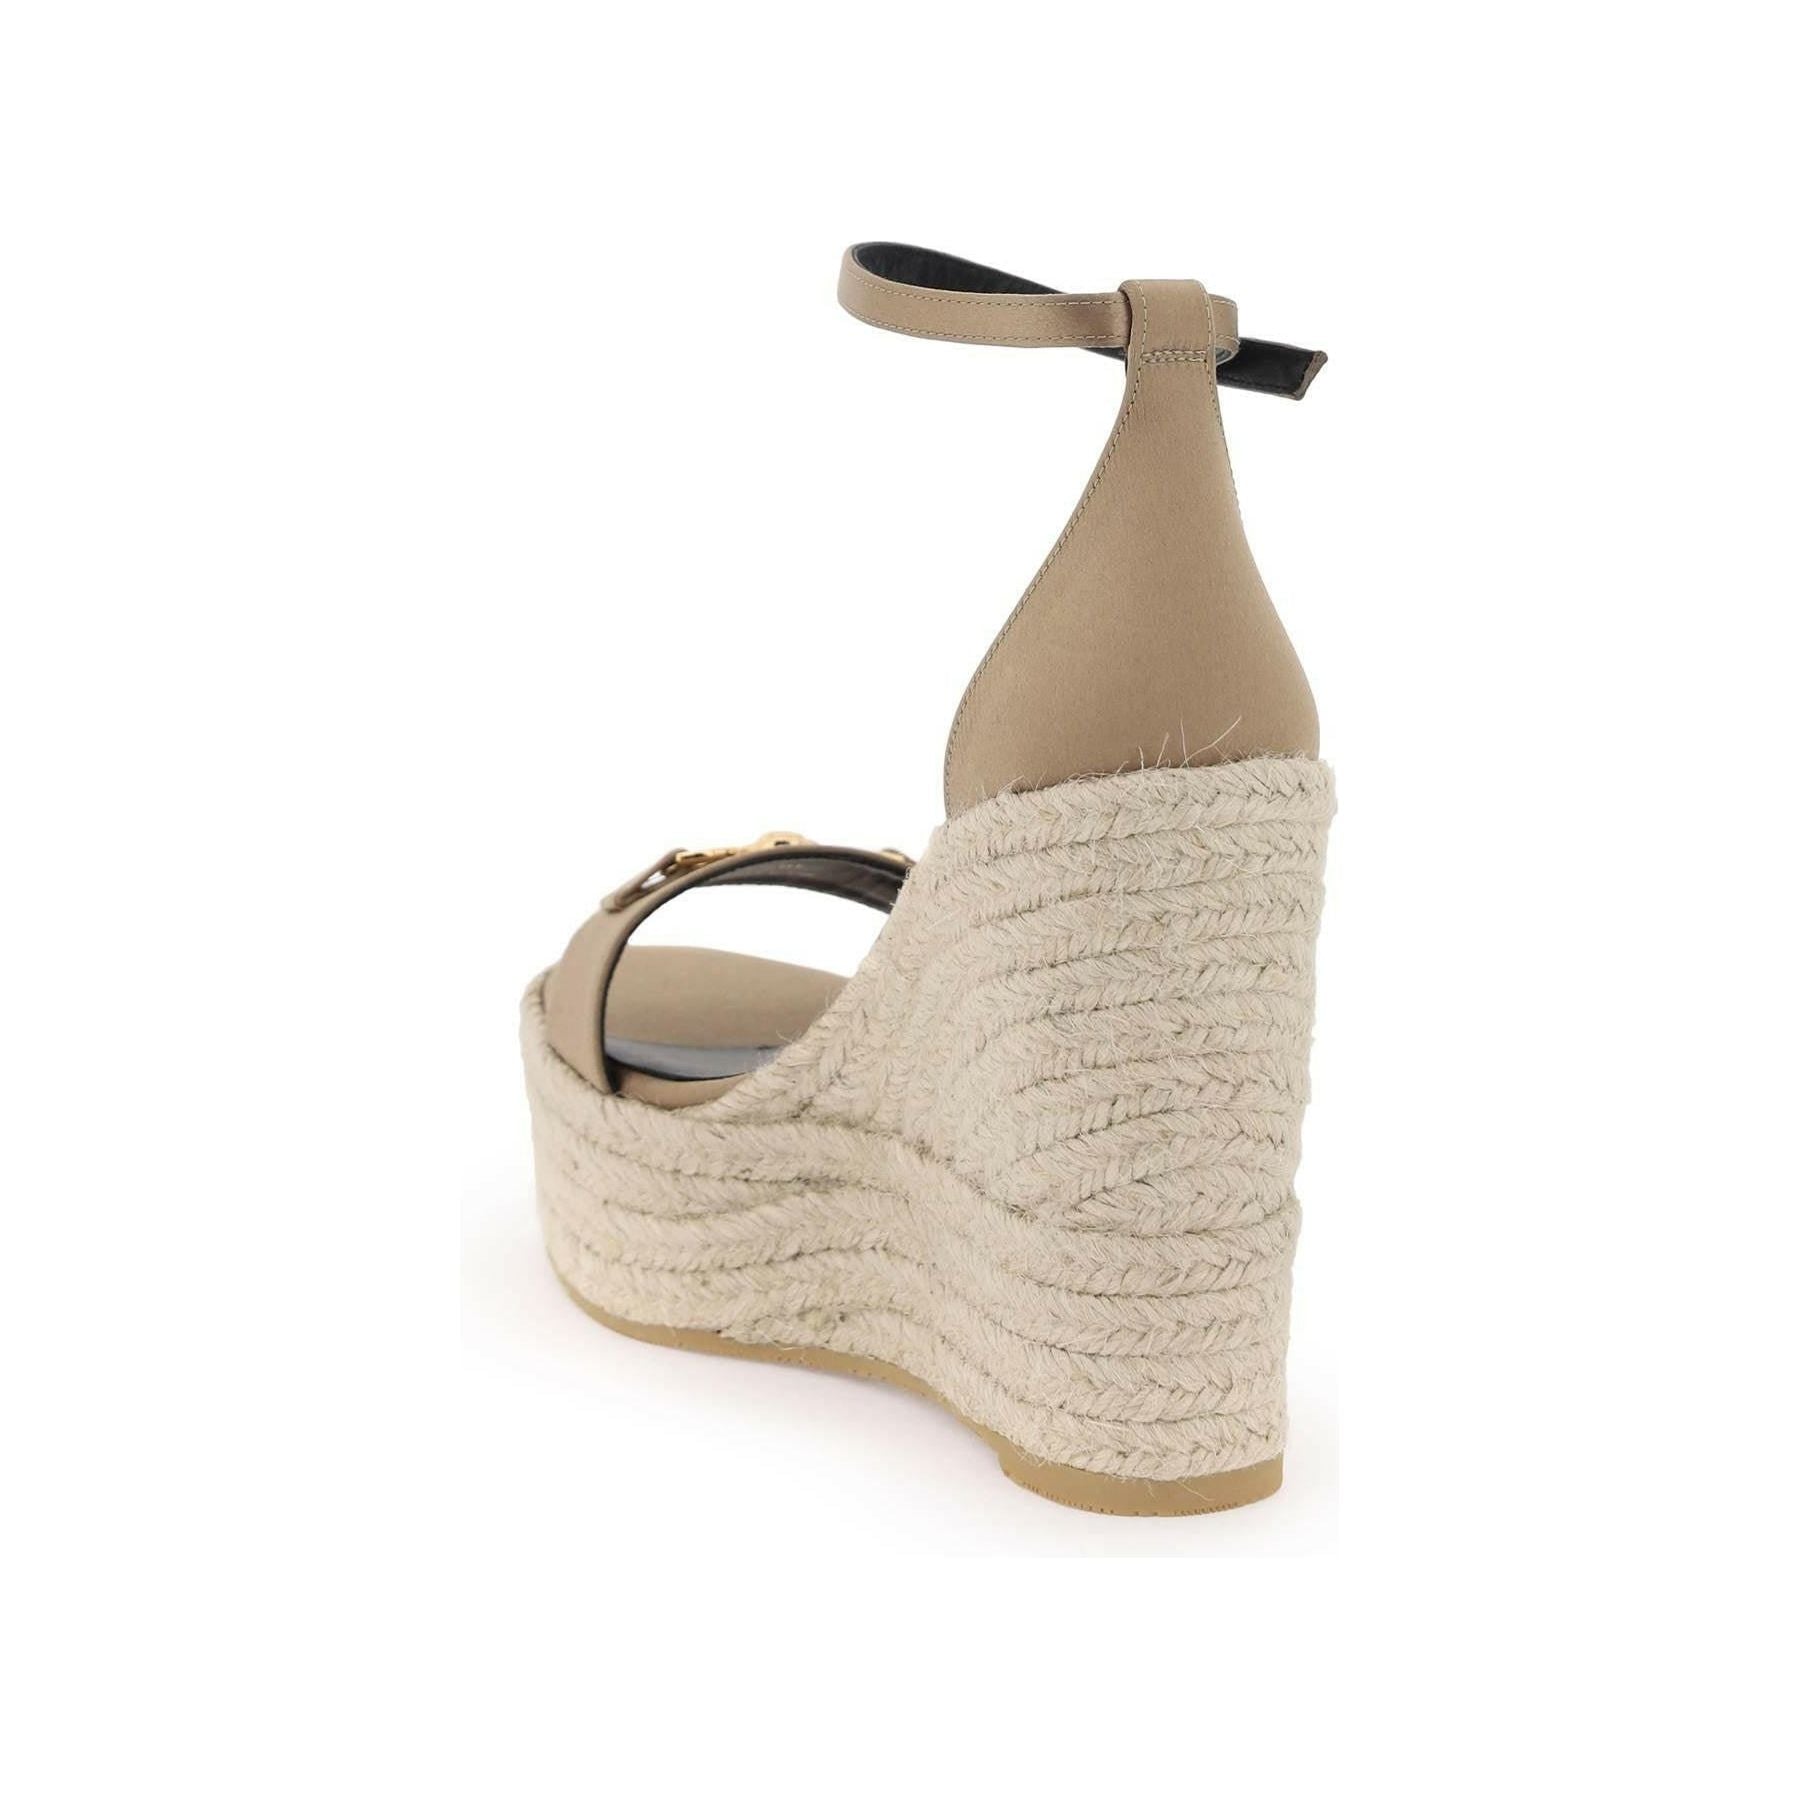 Camel Satin Medusa '95 Wedge Sandals With Adjustable Ankle Strap VERSACE JOHN JULIA.